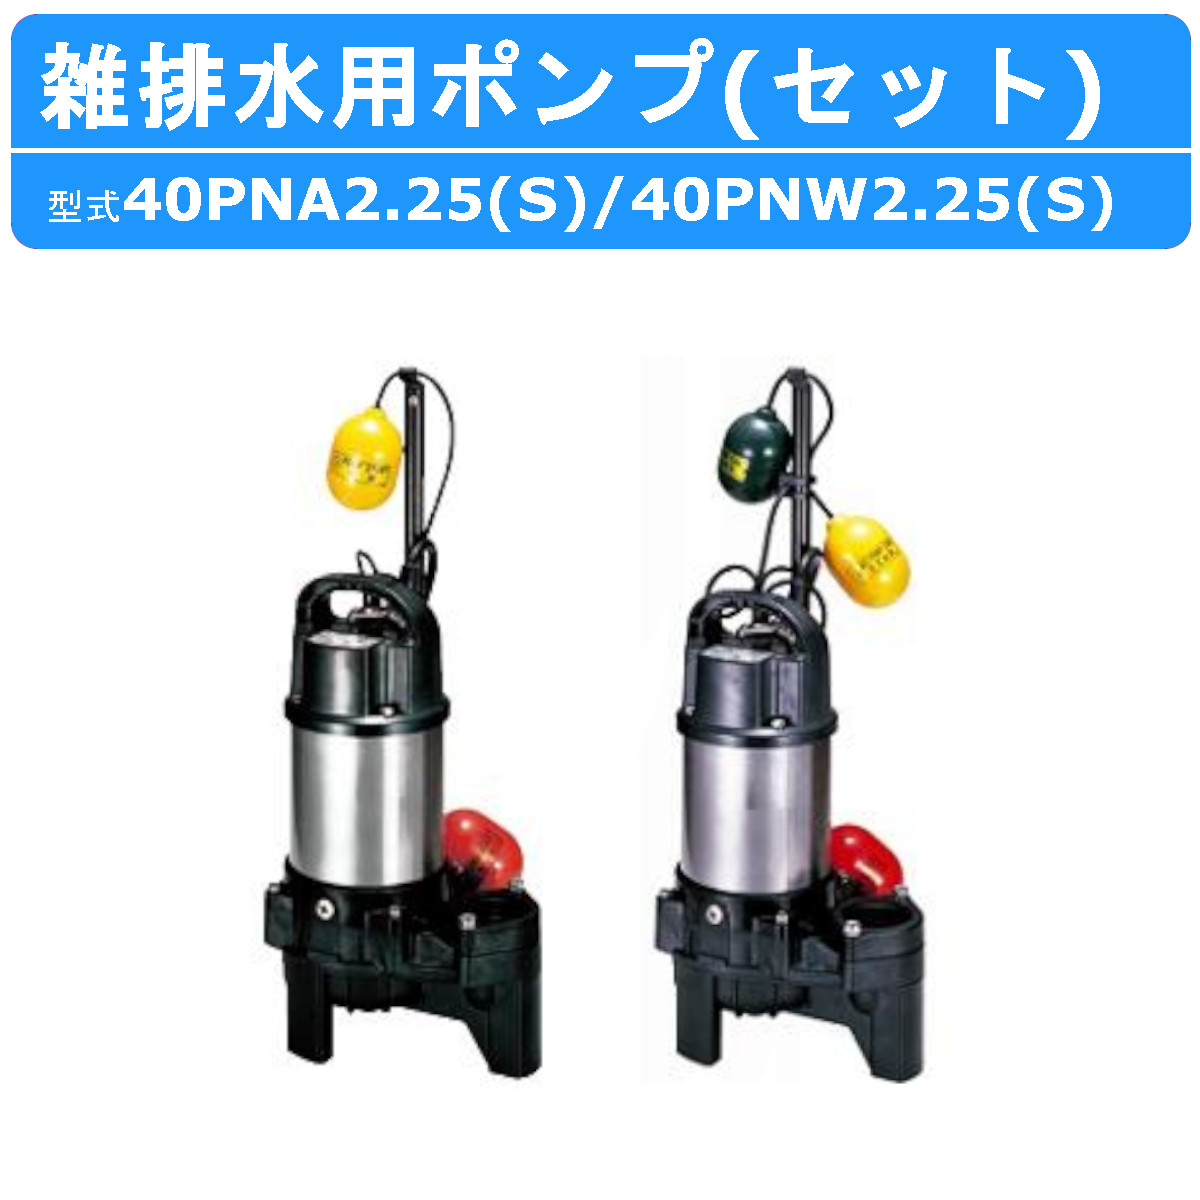 ツルミ 雑排水用 水中ポンプ セット 40PNA2.25S / 40PNW2.25S 100V